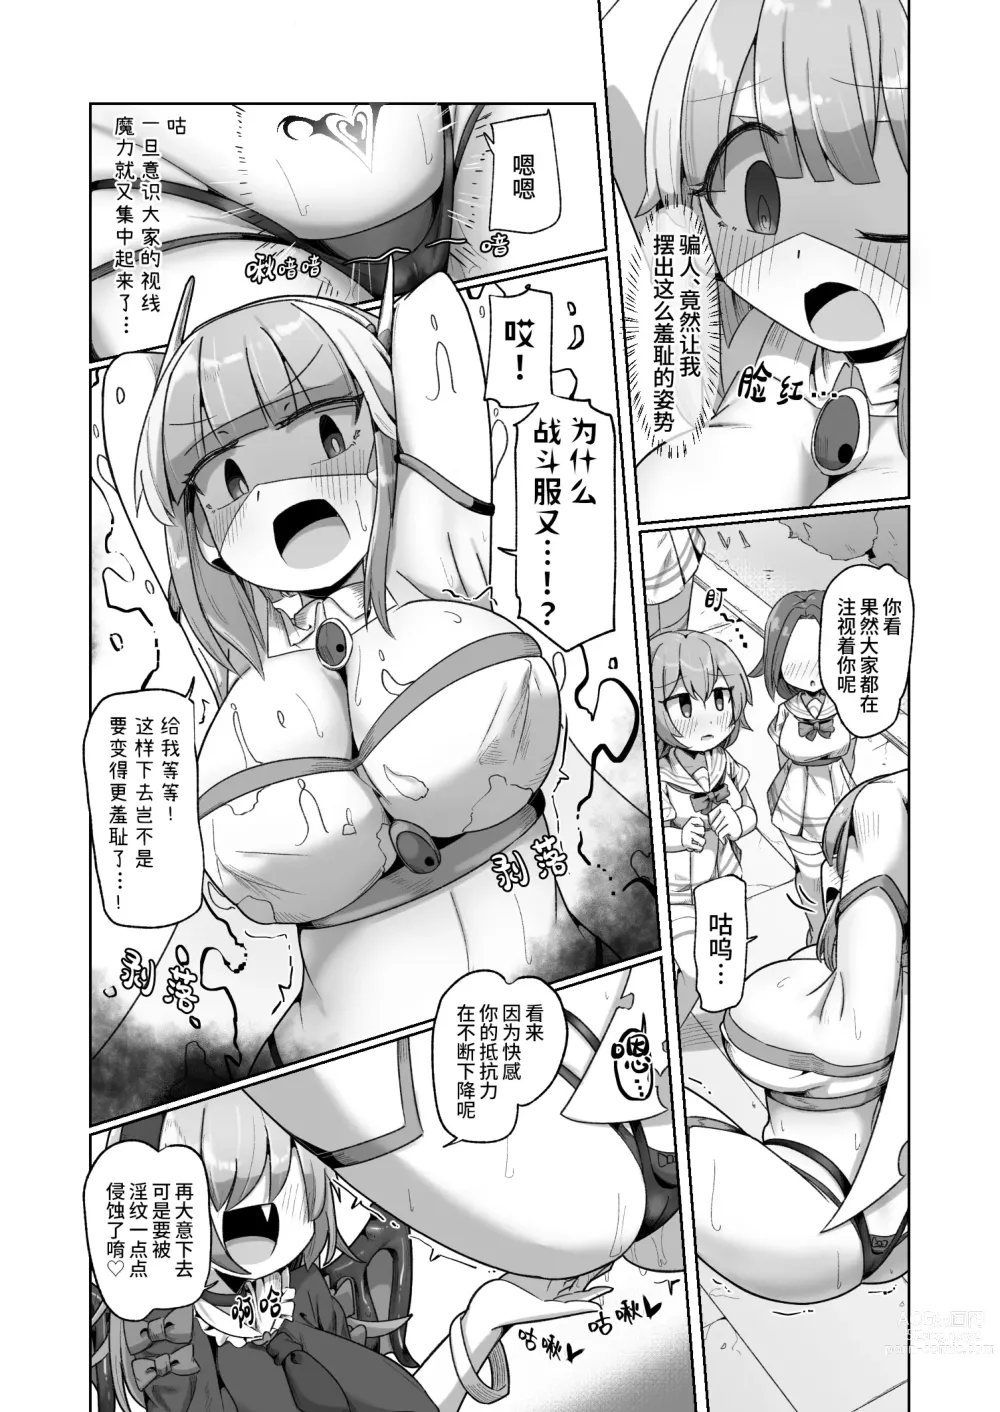 Page 14 of doujinshi 被本该守护的同伴侵犯的这种感觉怎么样啊(笑)??